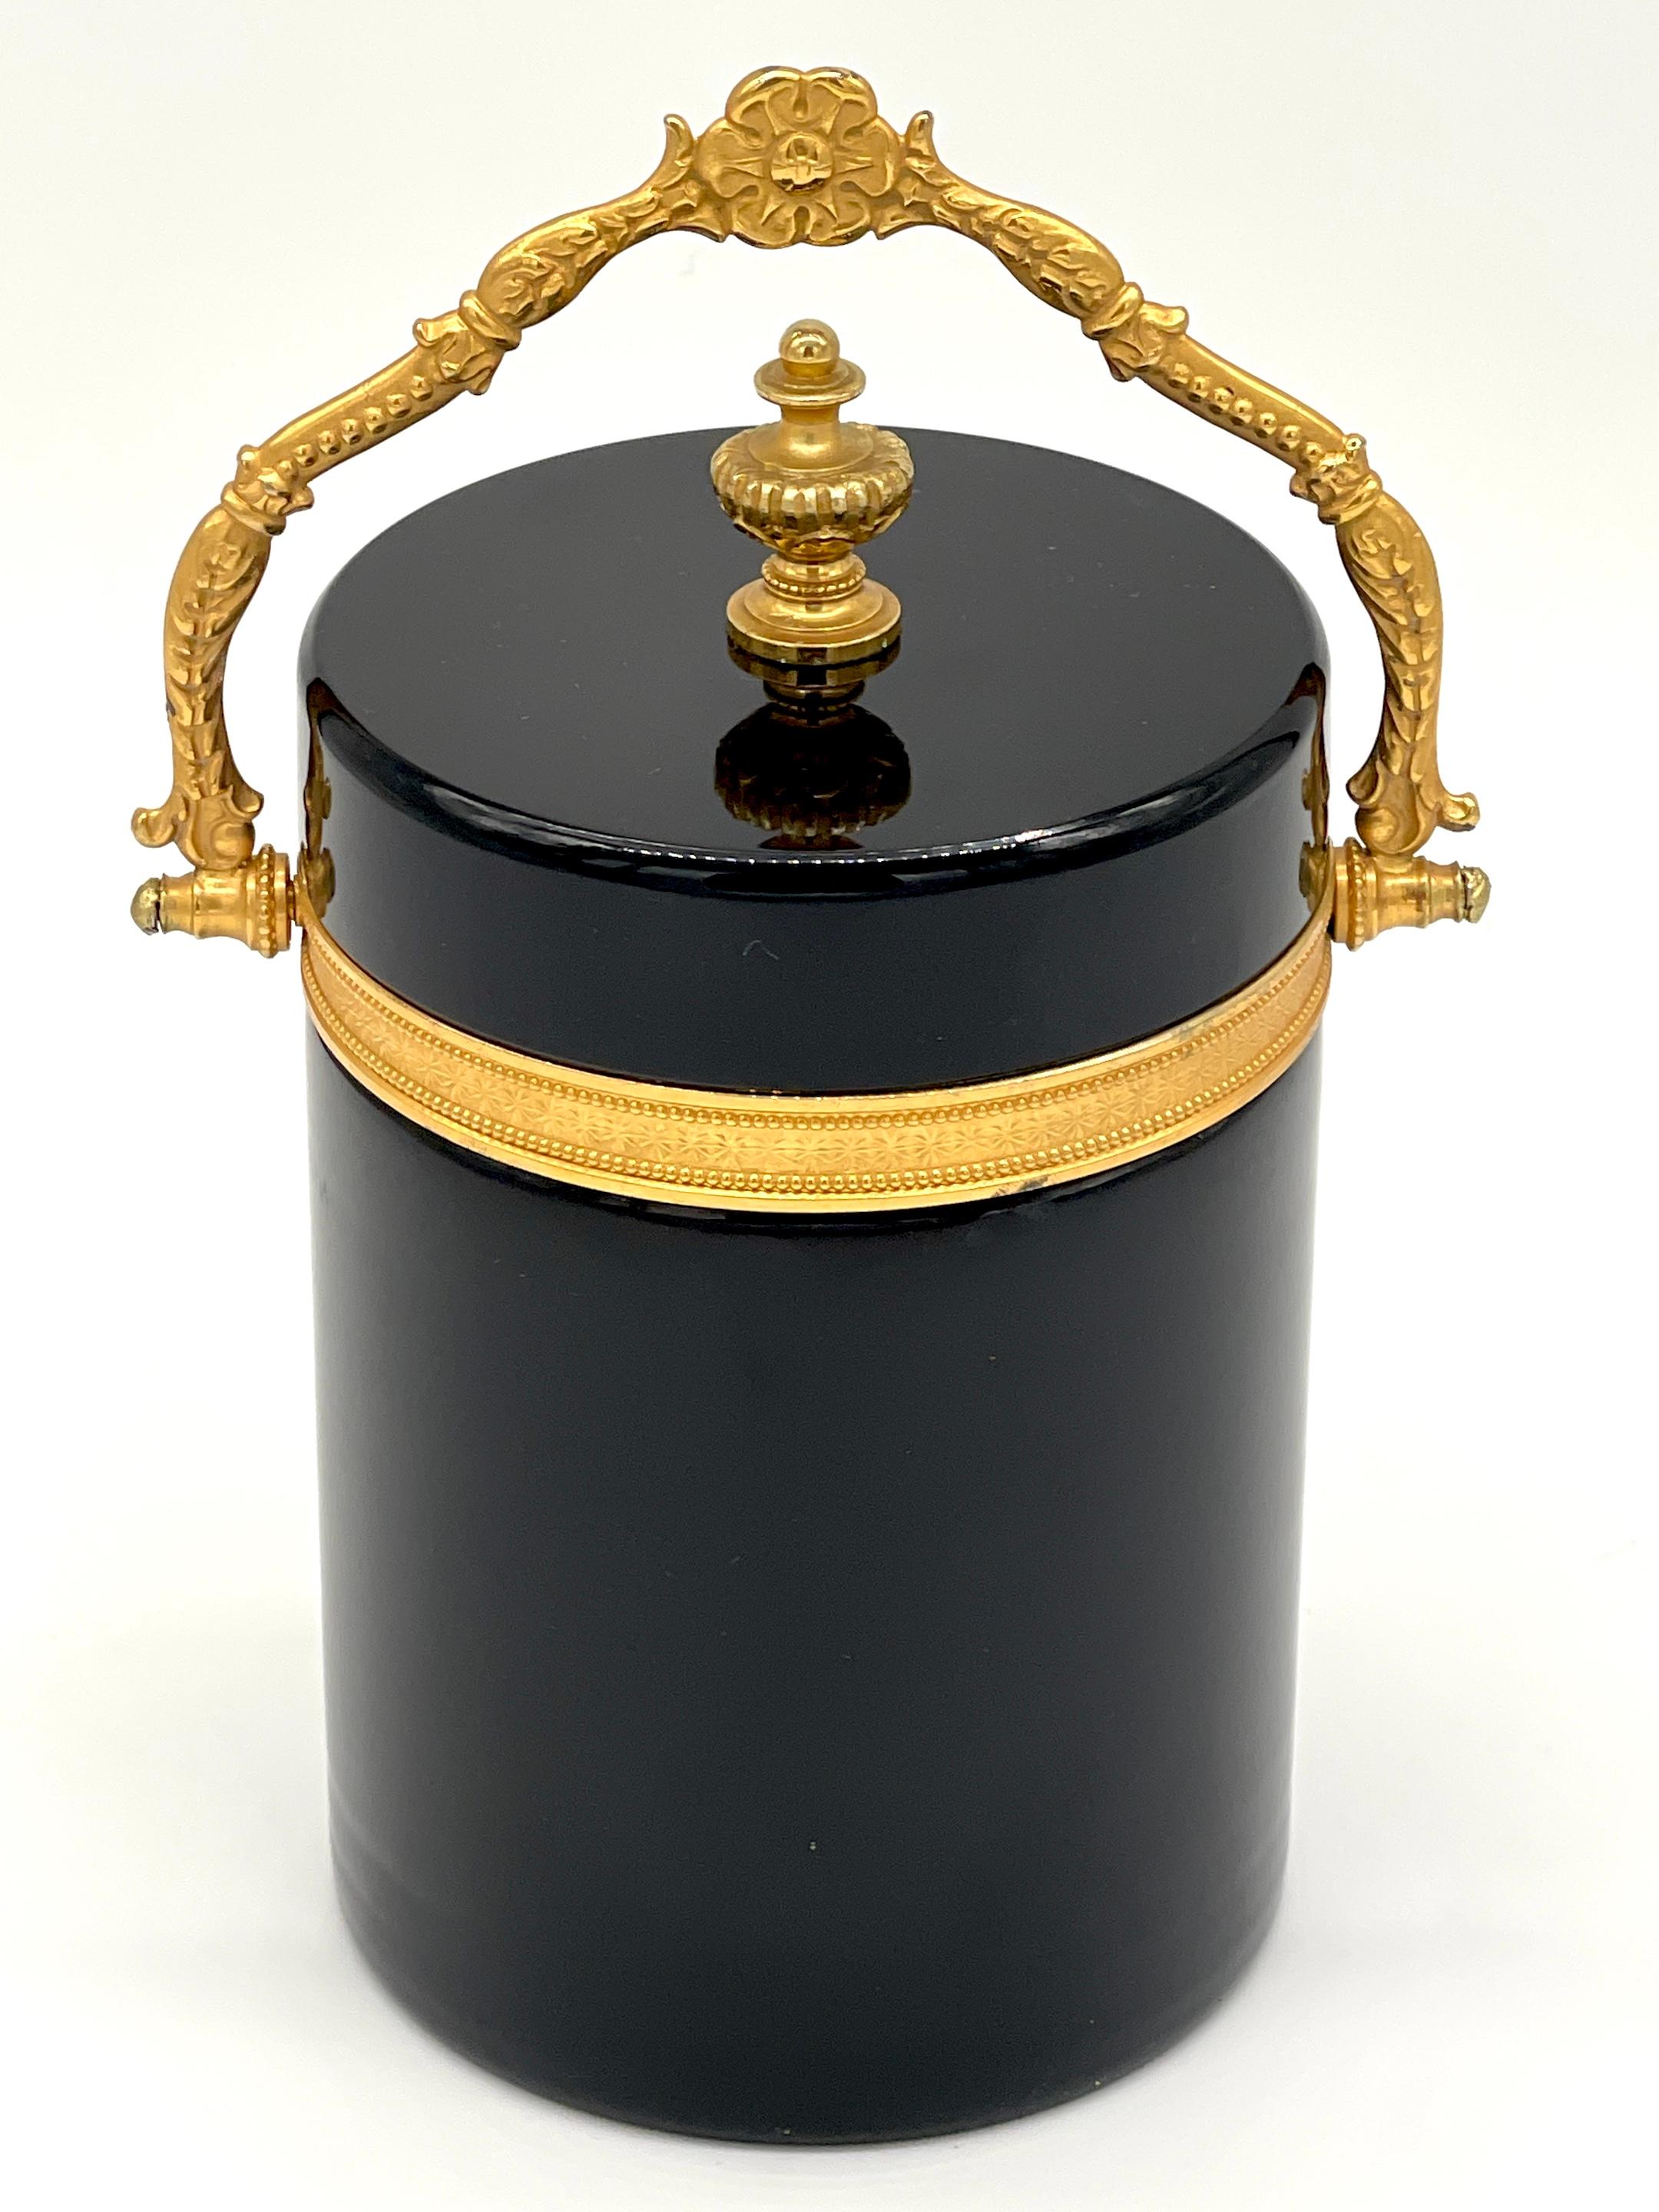 Seau à glace néoclassique italien monté en bronze doré et opaline de Murano avec poignée en forme de boîte
Italie, Circa 1960

Pièce élégante et captivante de l'artisanat italien, cette boîte/seau à glace néoclassique en opaline noire de Murano